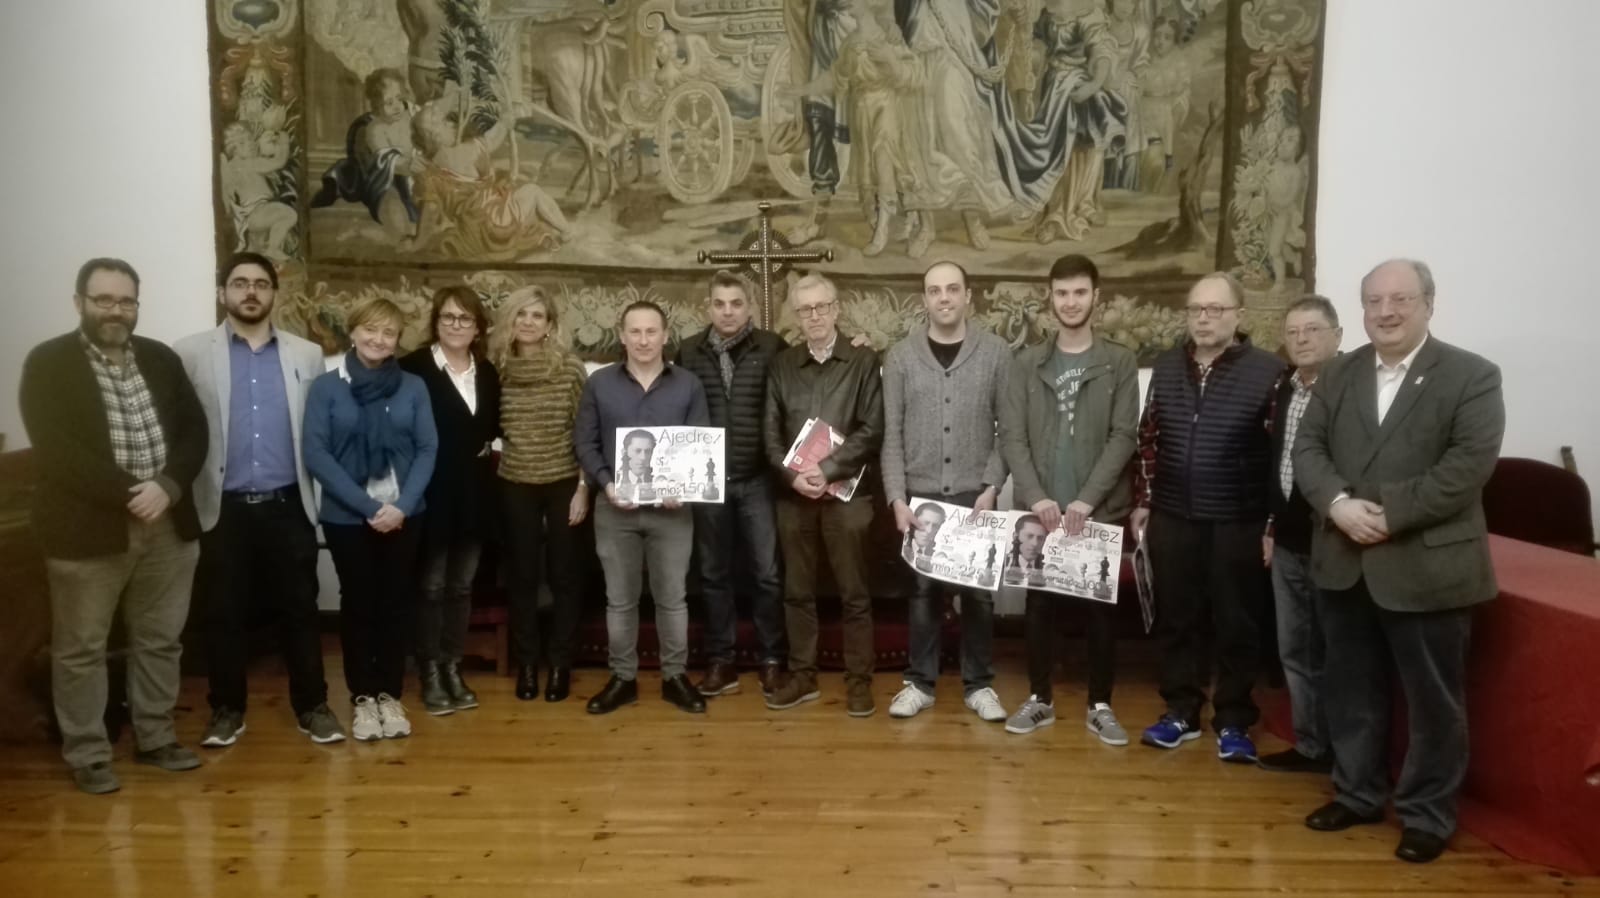  La Universidad de Salamanca celebra un torneo de ajedrez en memoria de Pablo de Unamuno